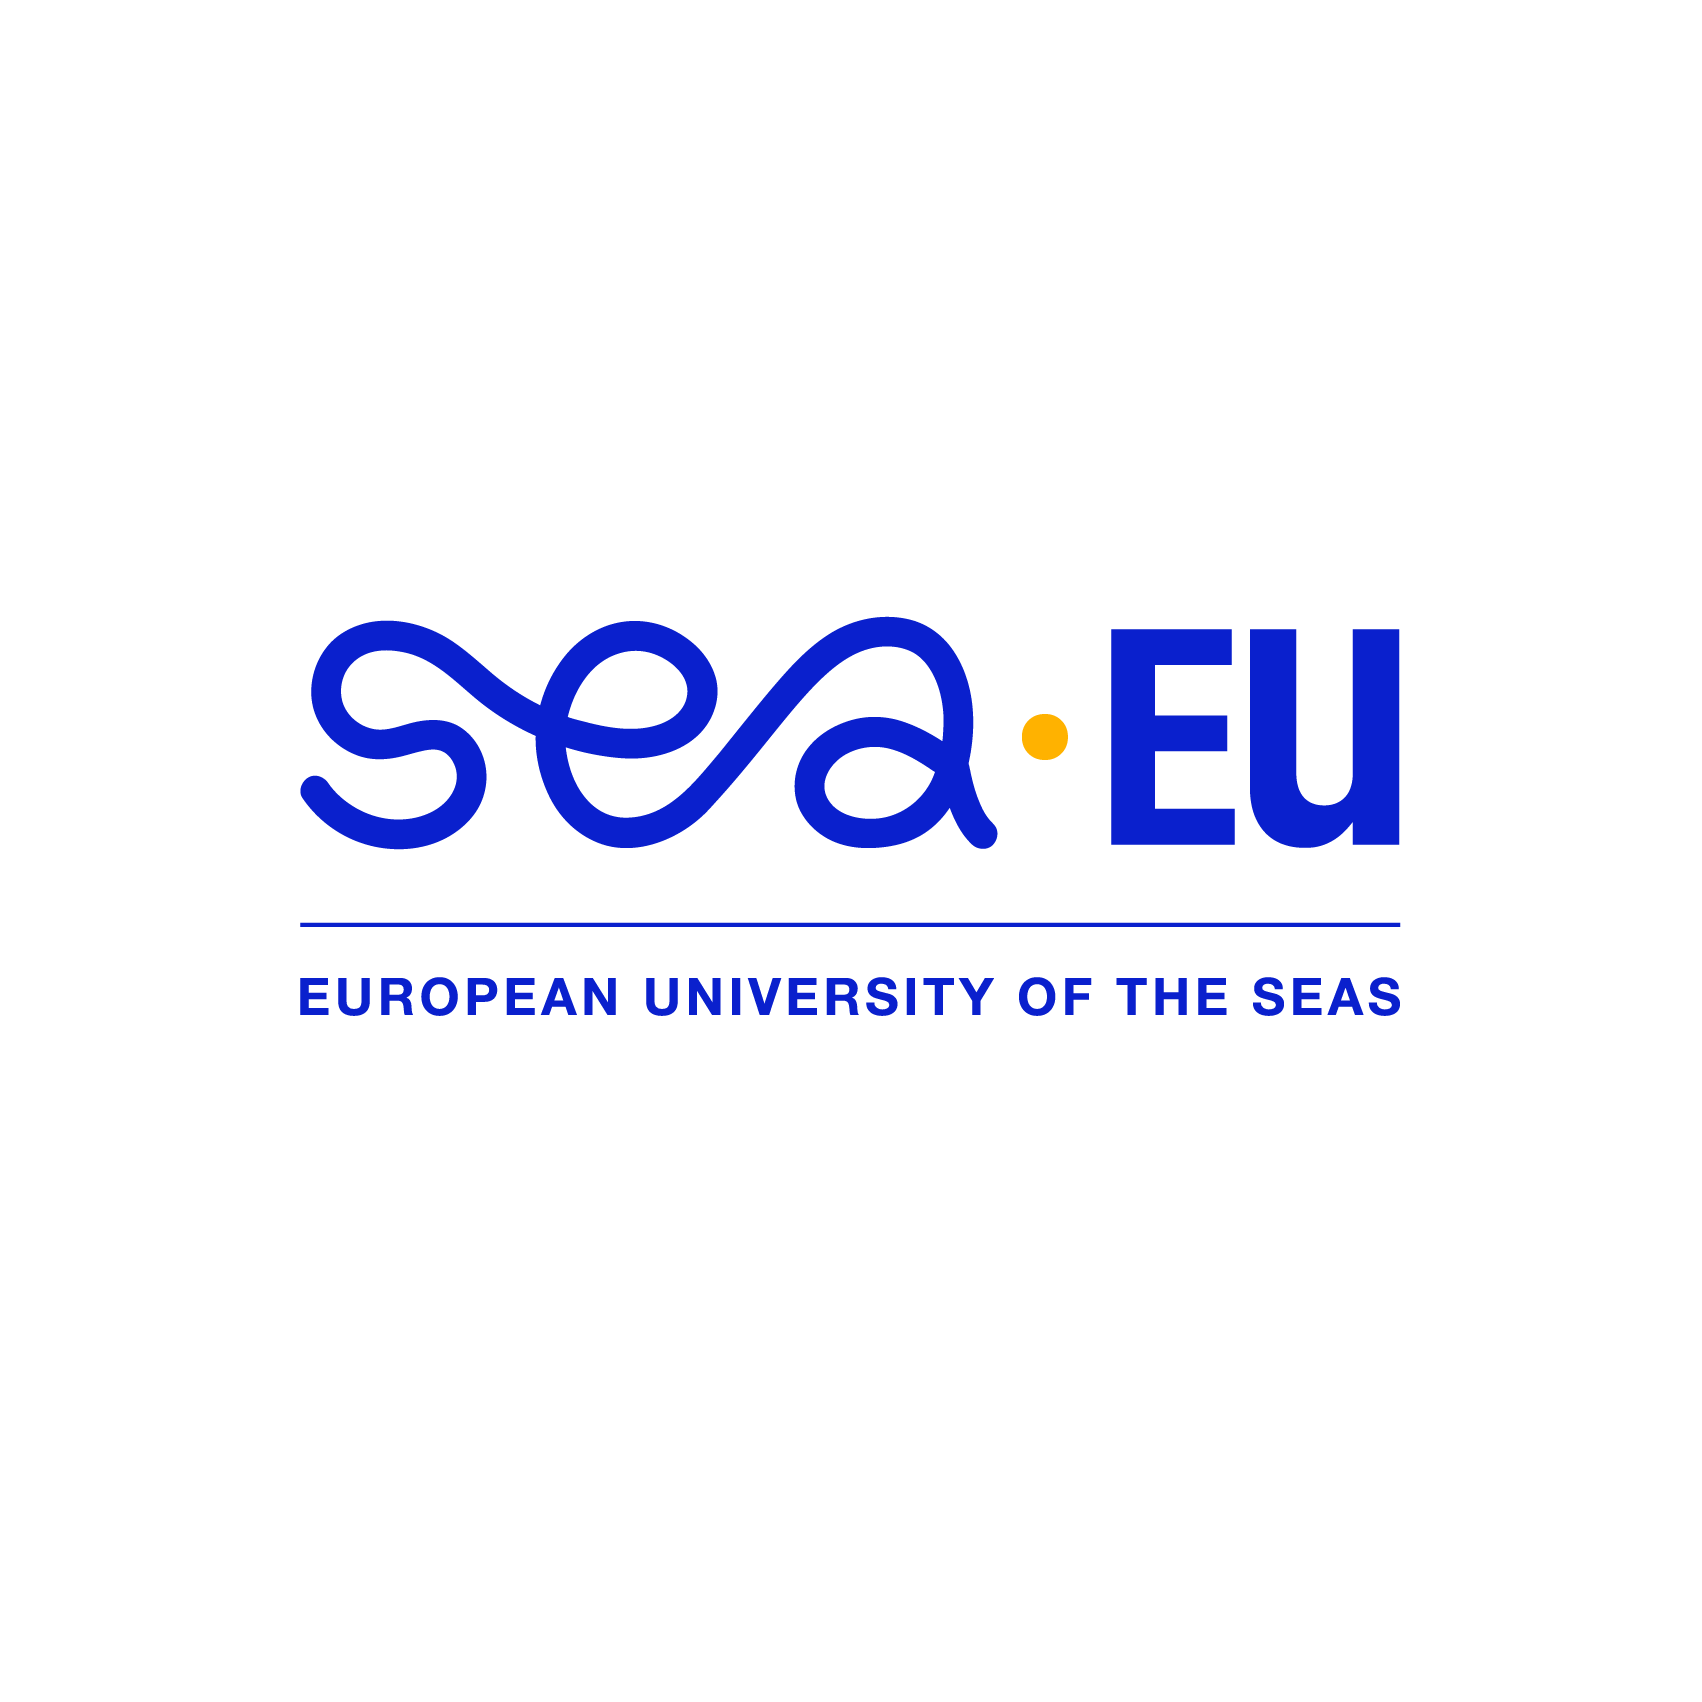 Logo SEA-EU